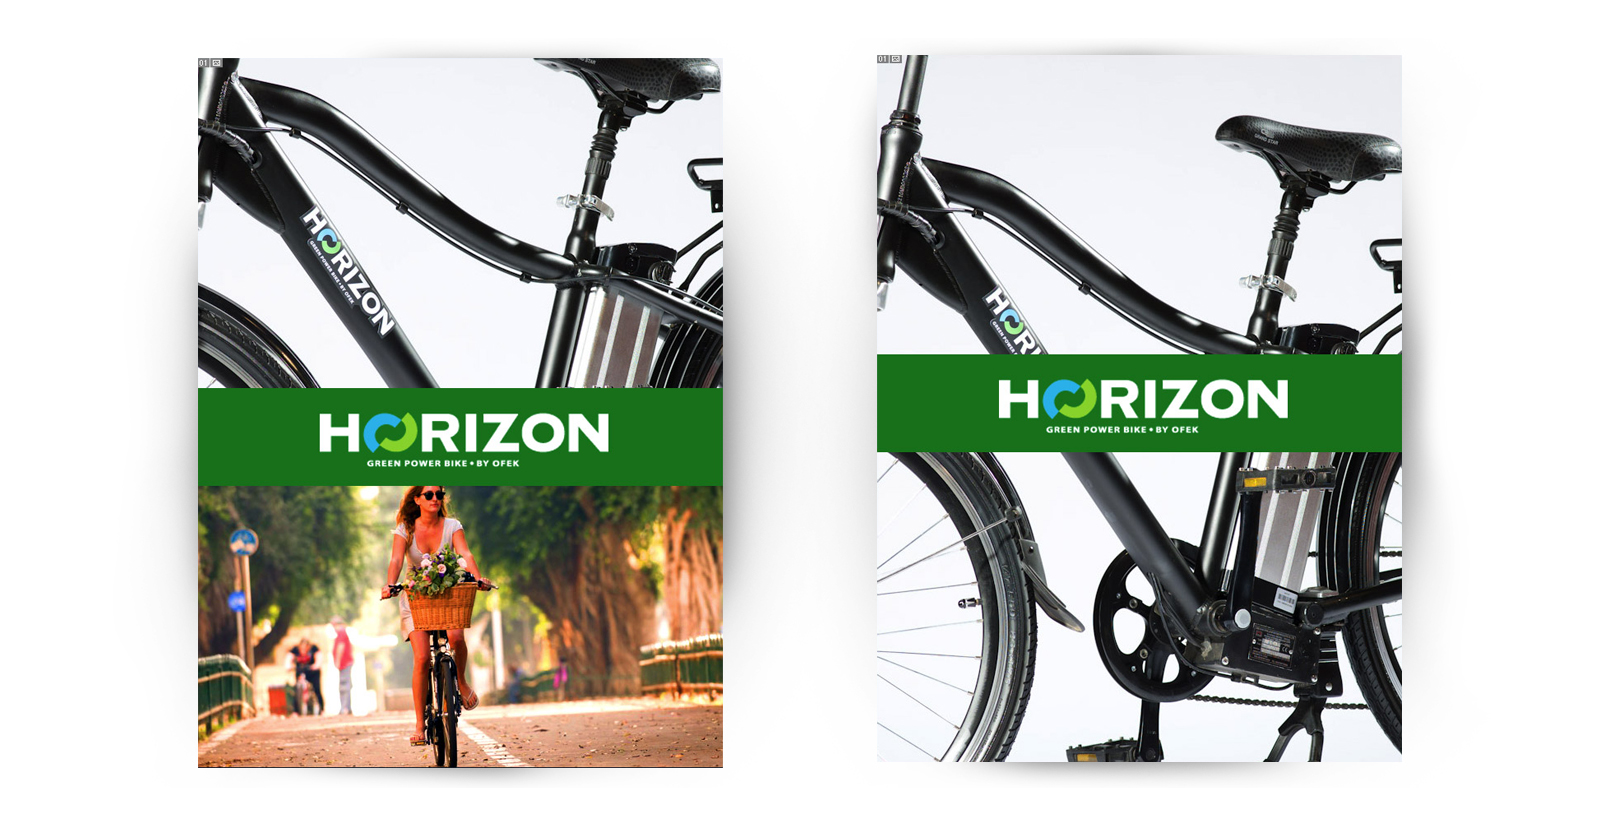 - HORIZON – צילומי קמפיין למותג האופניים החשמליות, מהראשונים בארץ. הצילום התקיים בסטודיו וברחובות תל אביב.